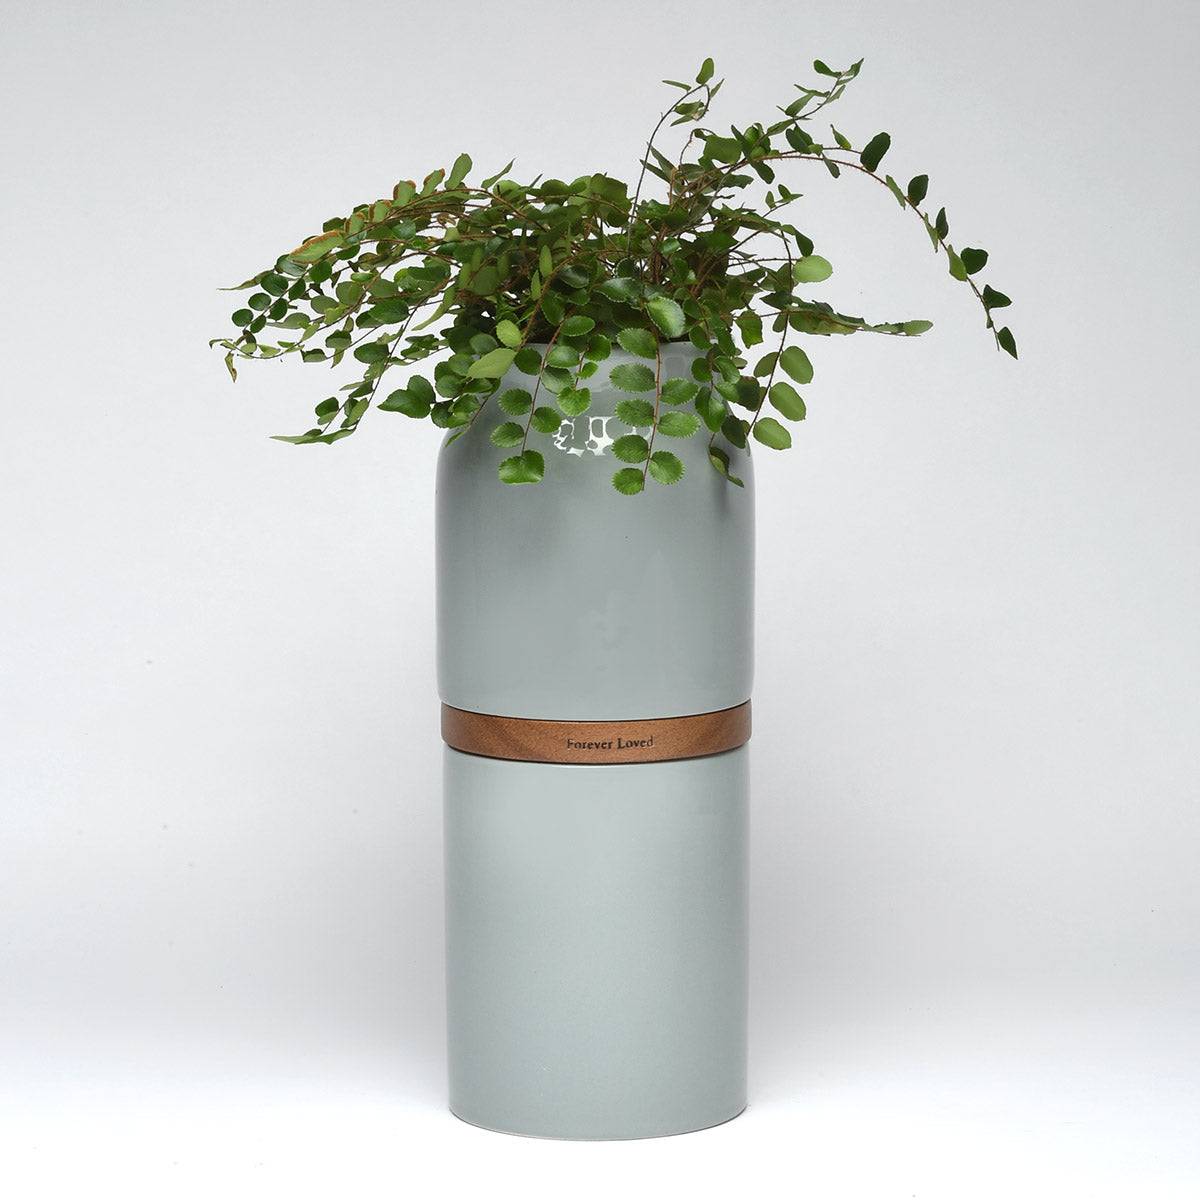 Vega Vase Urn in Grey With Dark Wood